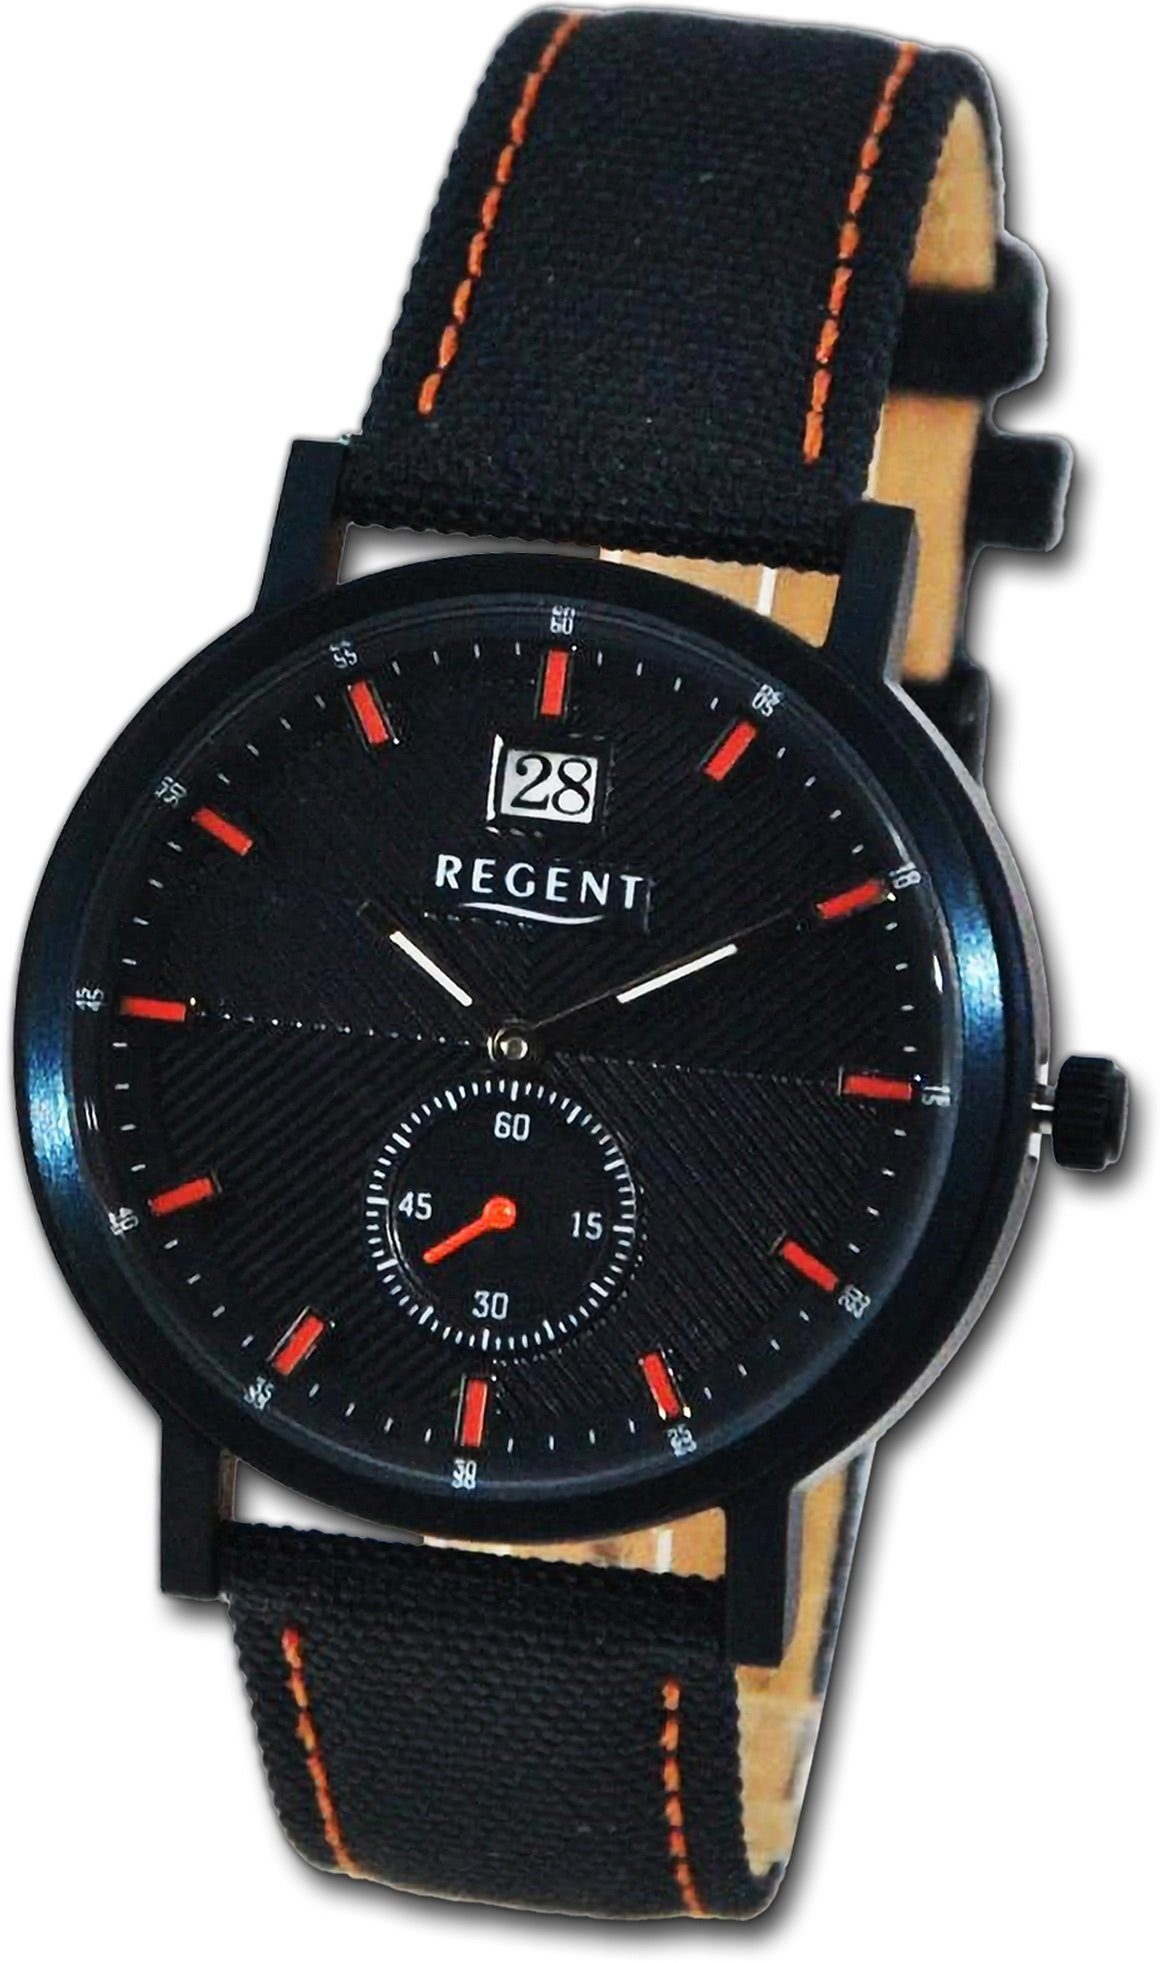 Regent Quarzuhr Regent Herren Armbanduhr Lederarmband Analog, orange, rundes Herrenuhr (ca 37mm) schwarz, Gehäuse, groß